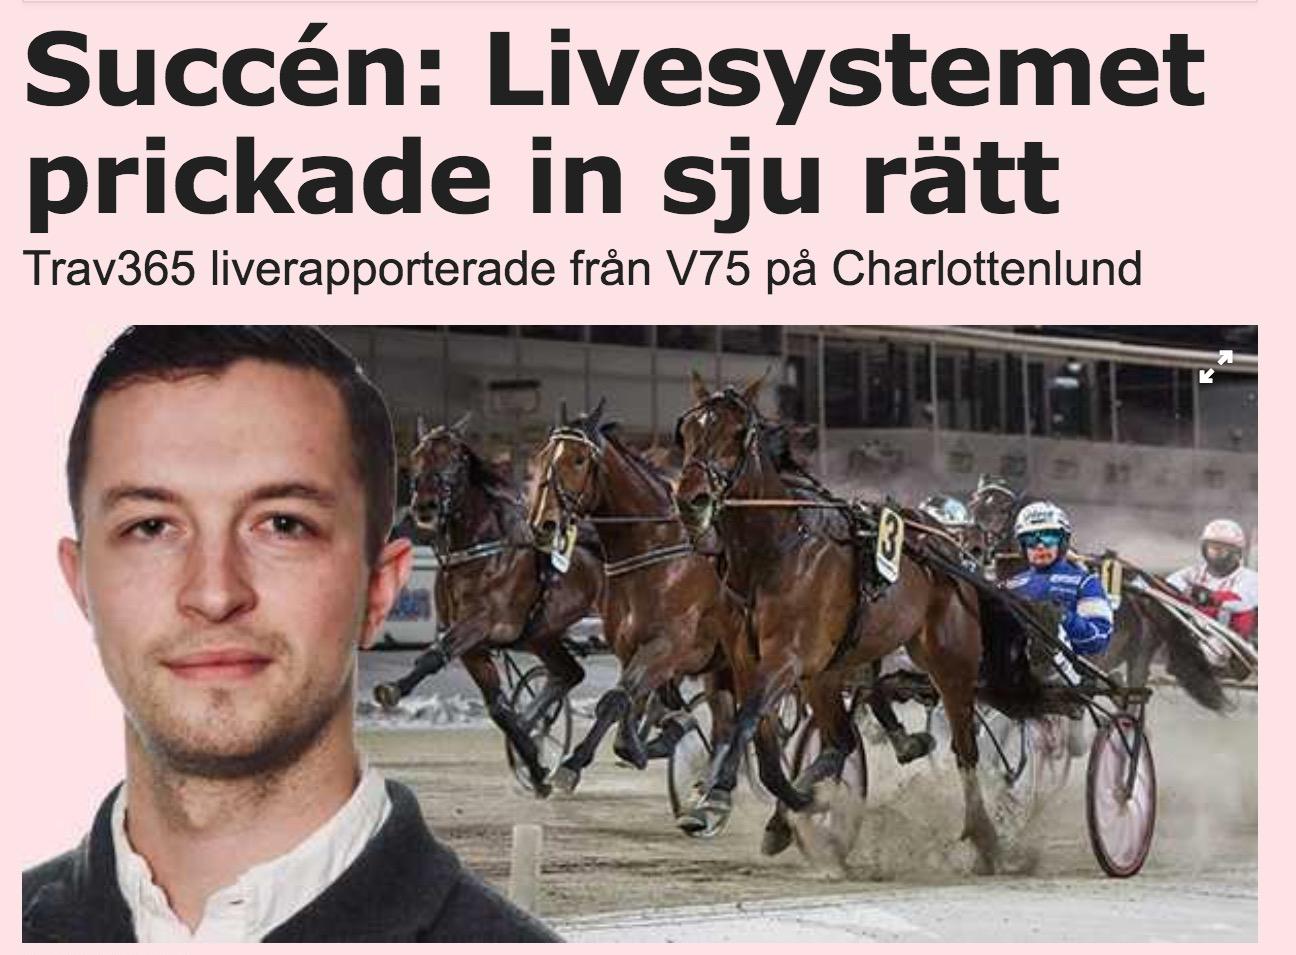 Trav365:s Charlie Hedstad satte ”sjuan” i Sportbladets liverapportering från extra V75.